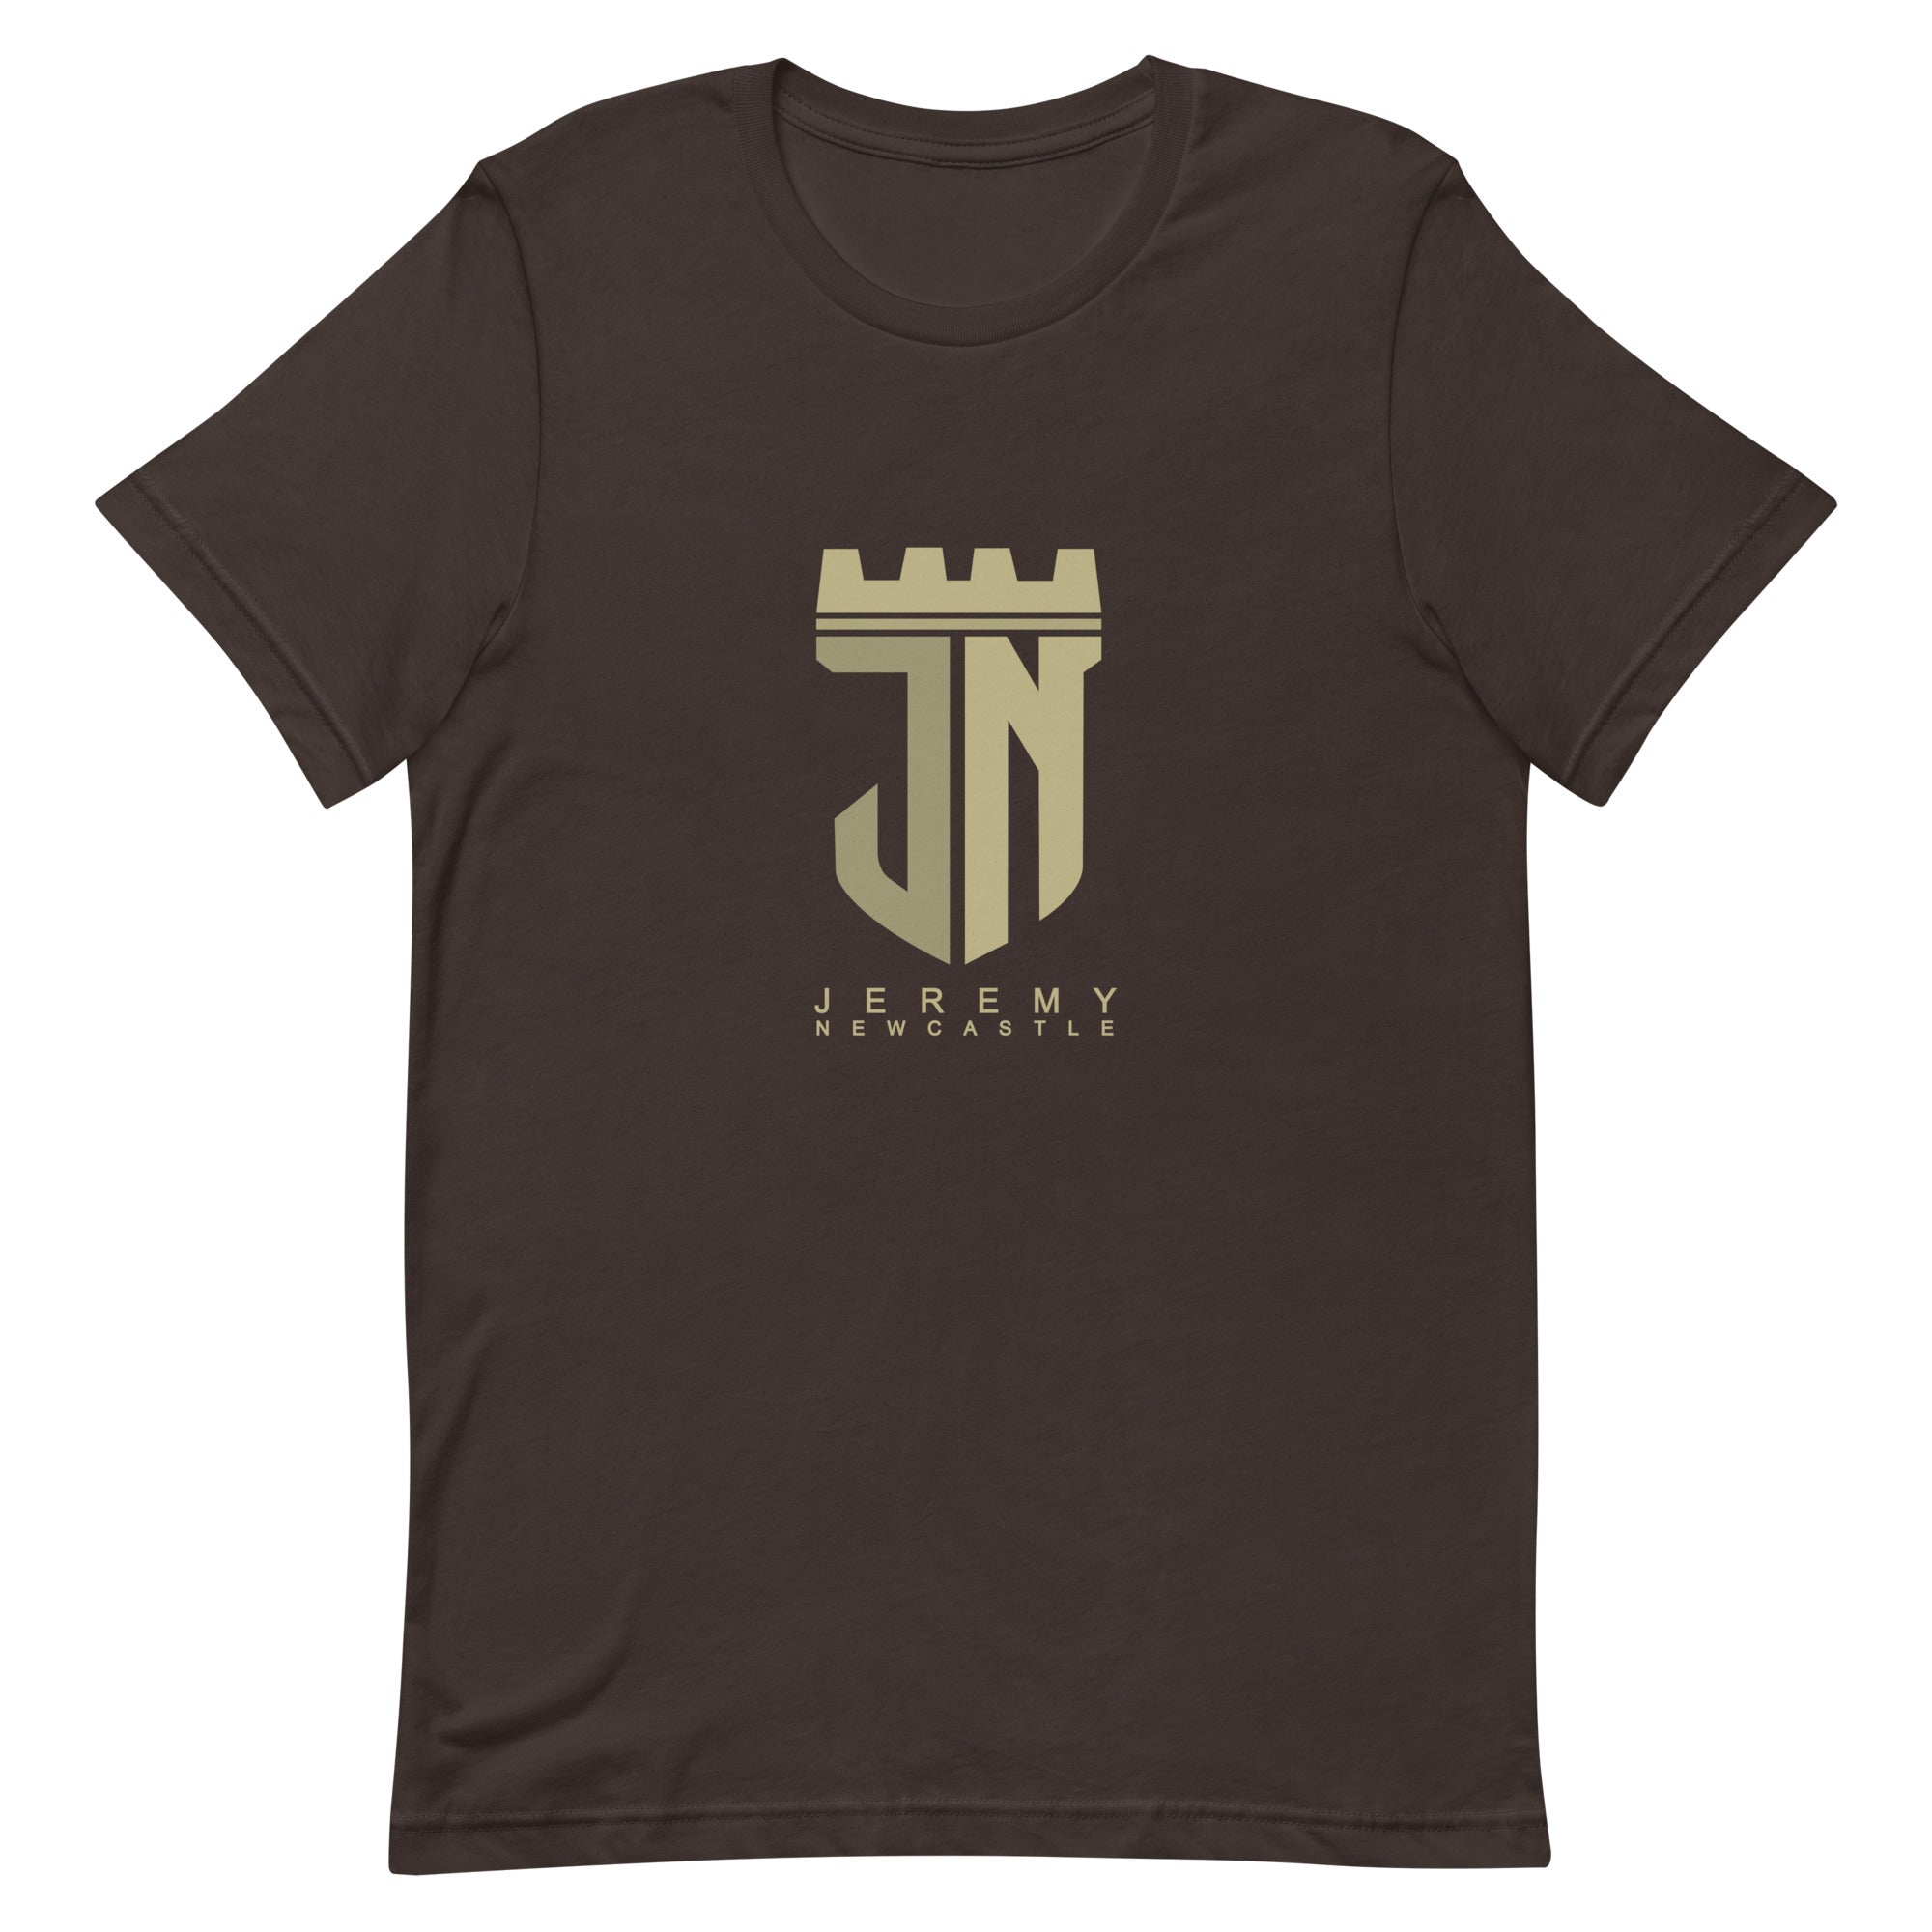 Jeremy Newcastle - Unisex t-shirt